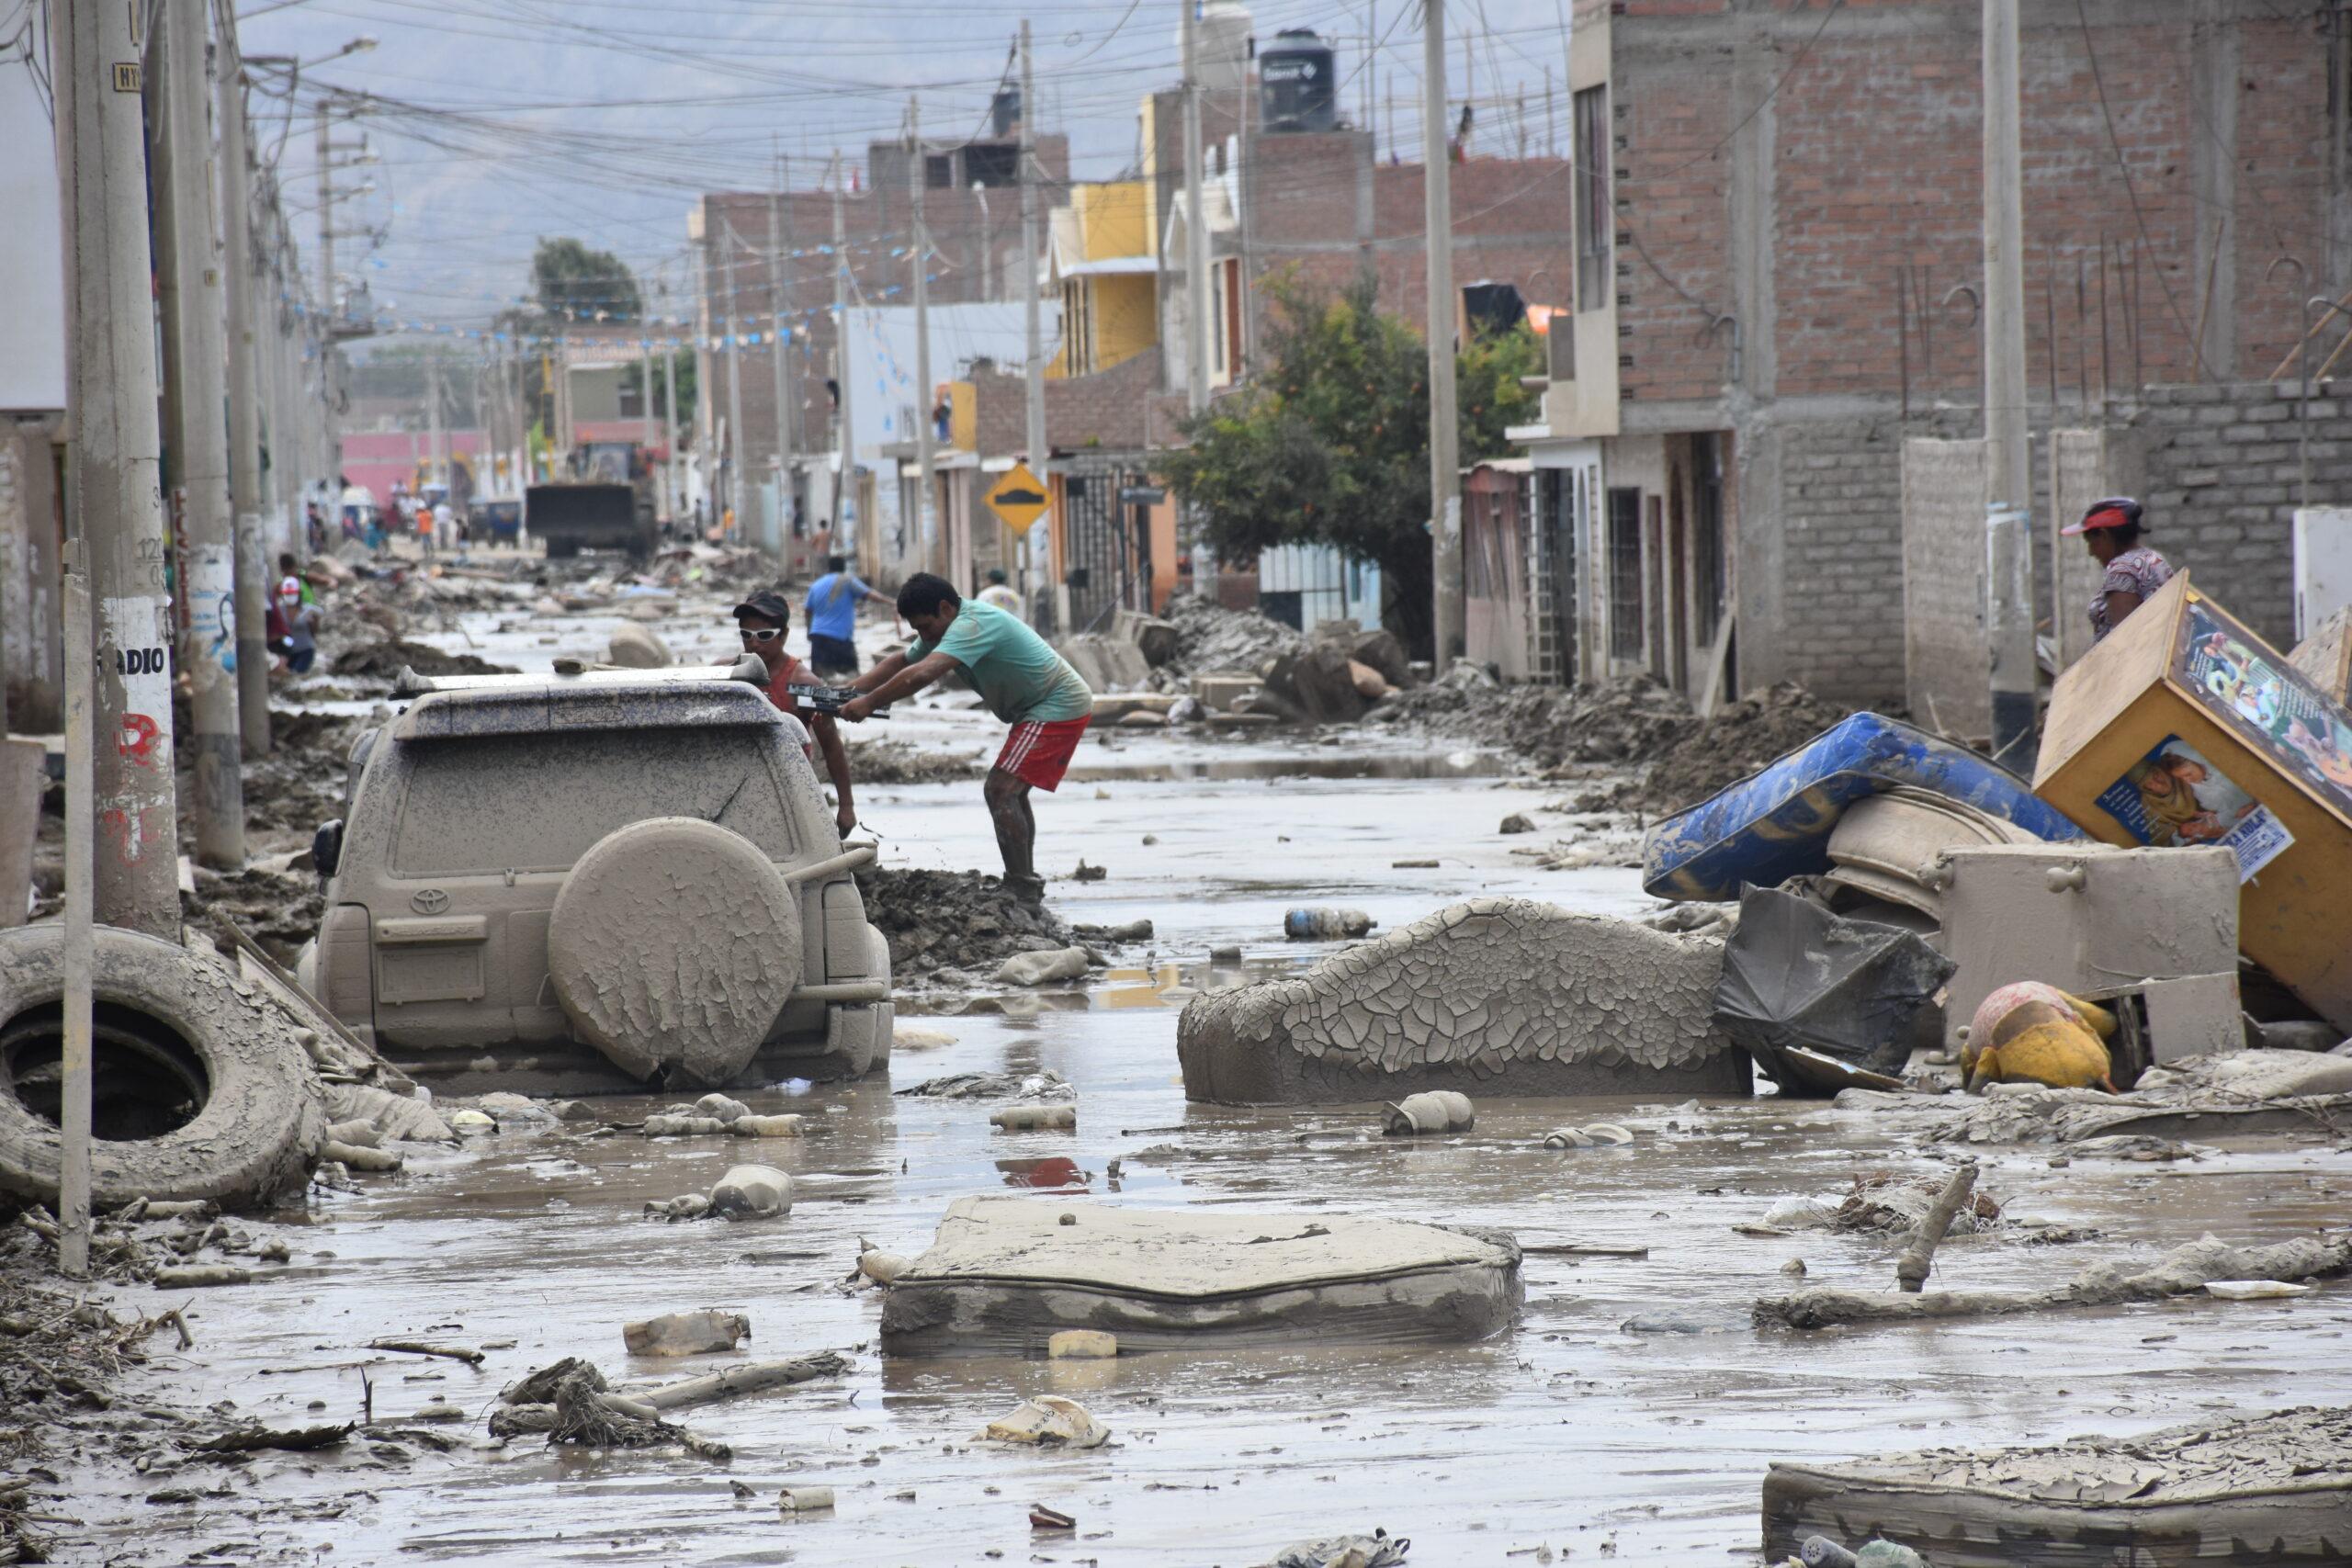 Perú, Huarmey.  Marzo 2017.
Afectaciones por inundaciones y deslizamientos en Perú. Vista de calle de Huarmey, muchas de las cuales se encuentran hundidas en lodo, luego de las inundaciones y deslizamientos que han afectado la región.
Desde el mes de enero un evento llamado El Niño Costero afectó Perú, generando fuertes lluvias por encima de los valores normales para la época y ocasionando las peores inundaciones y deslizamientos en décadas. 
Fernando Gandarillas /  IFRC

Peru, Huarmey.  March 2017.
Affectations produced by flooding and landslides in Peru. View of a street in Huarmey, many of which are sunken in mud, after the floods and landslides that have affected the region.

Since January an event called El Niño costero has affected Peru, generating heavy rains above normal values for the time and causing the worst floods and landslides in decades.

Fernando Gandarillas /  IFRC